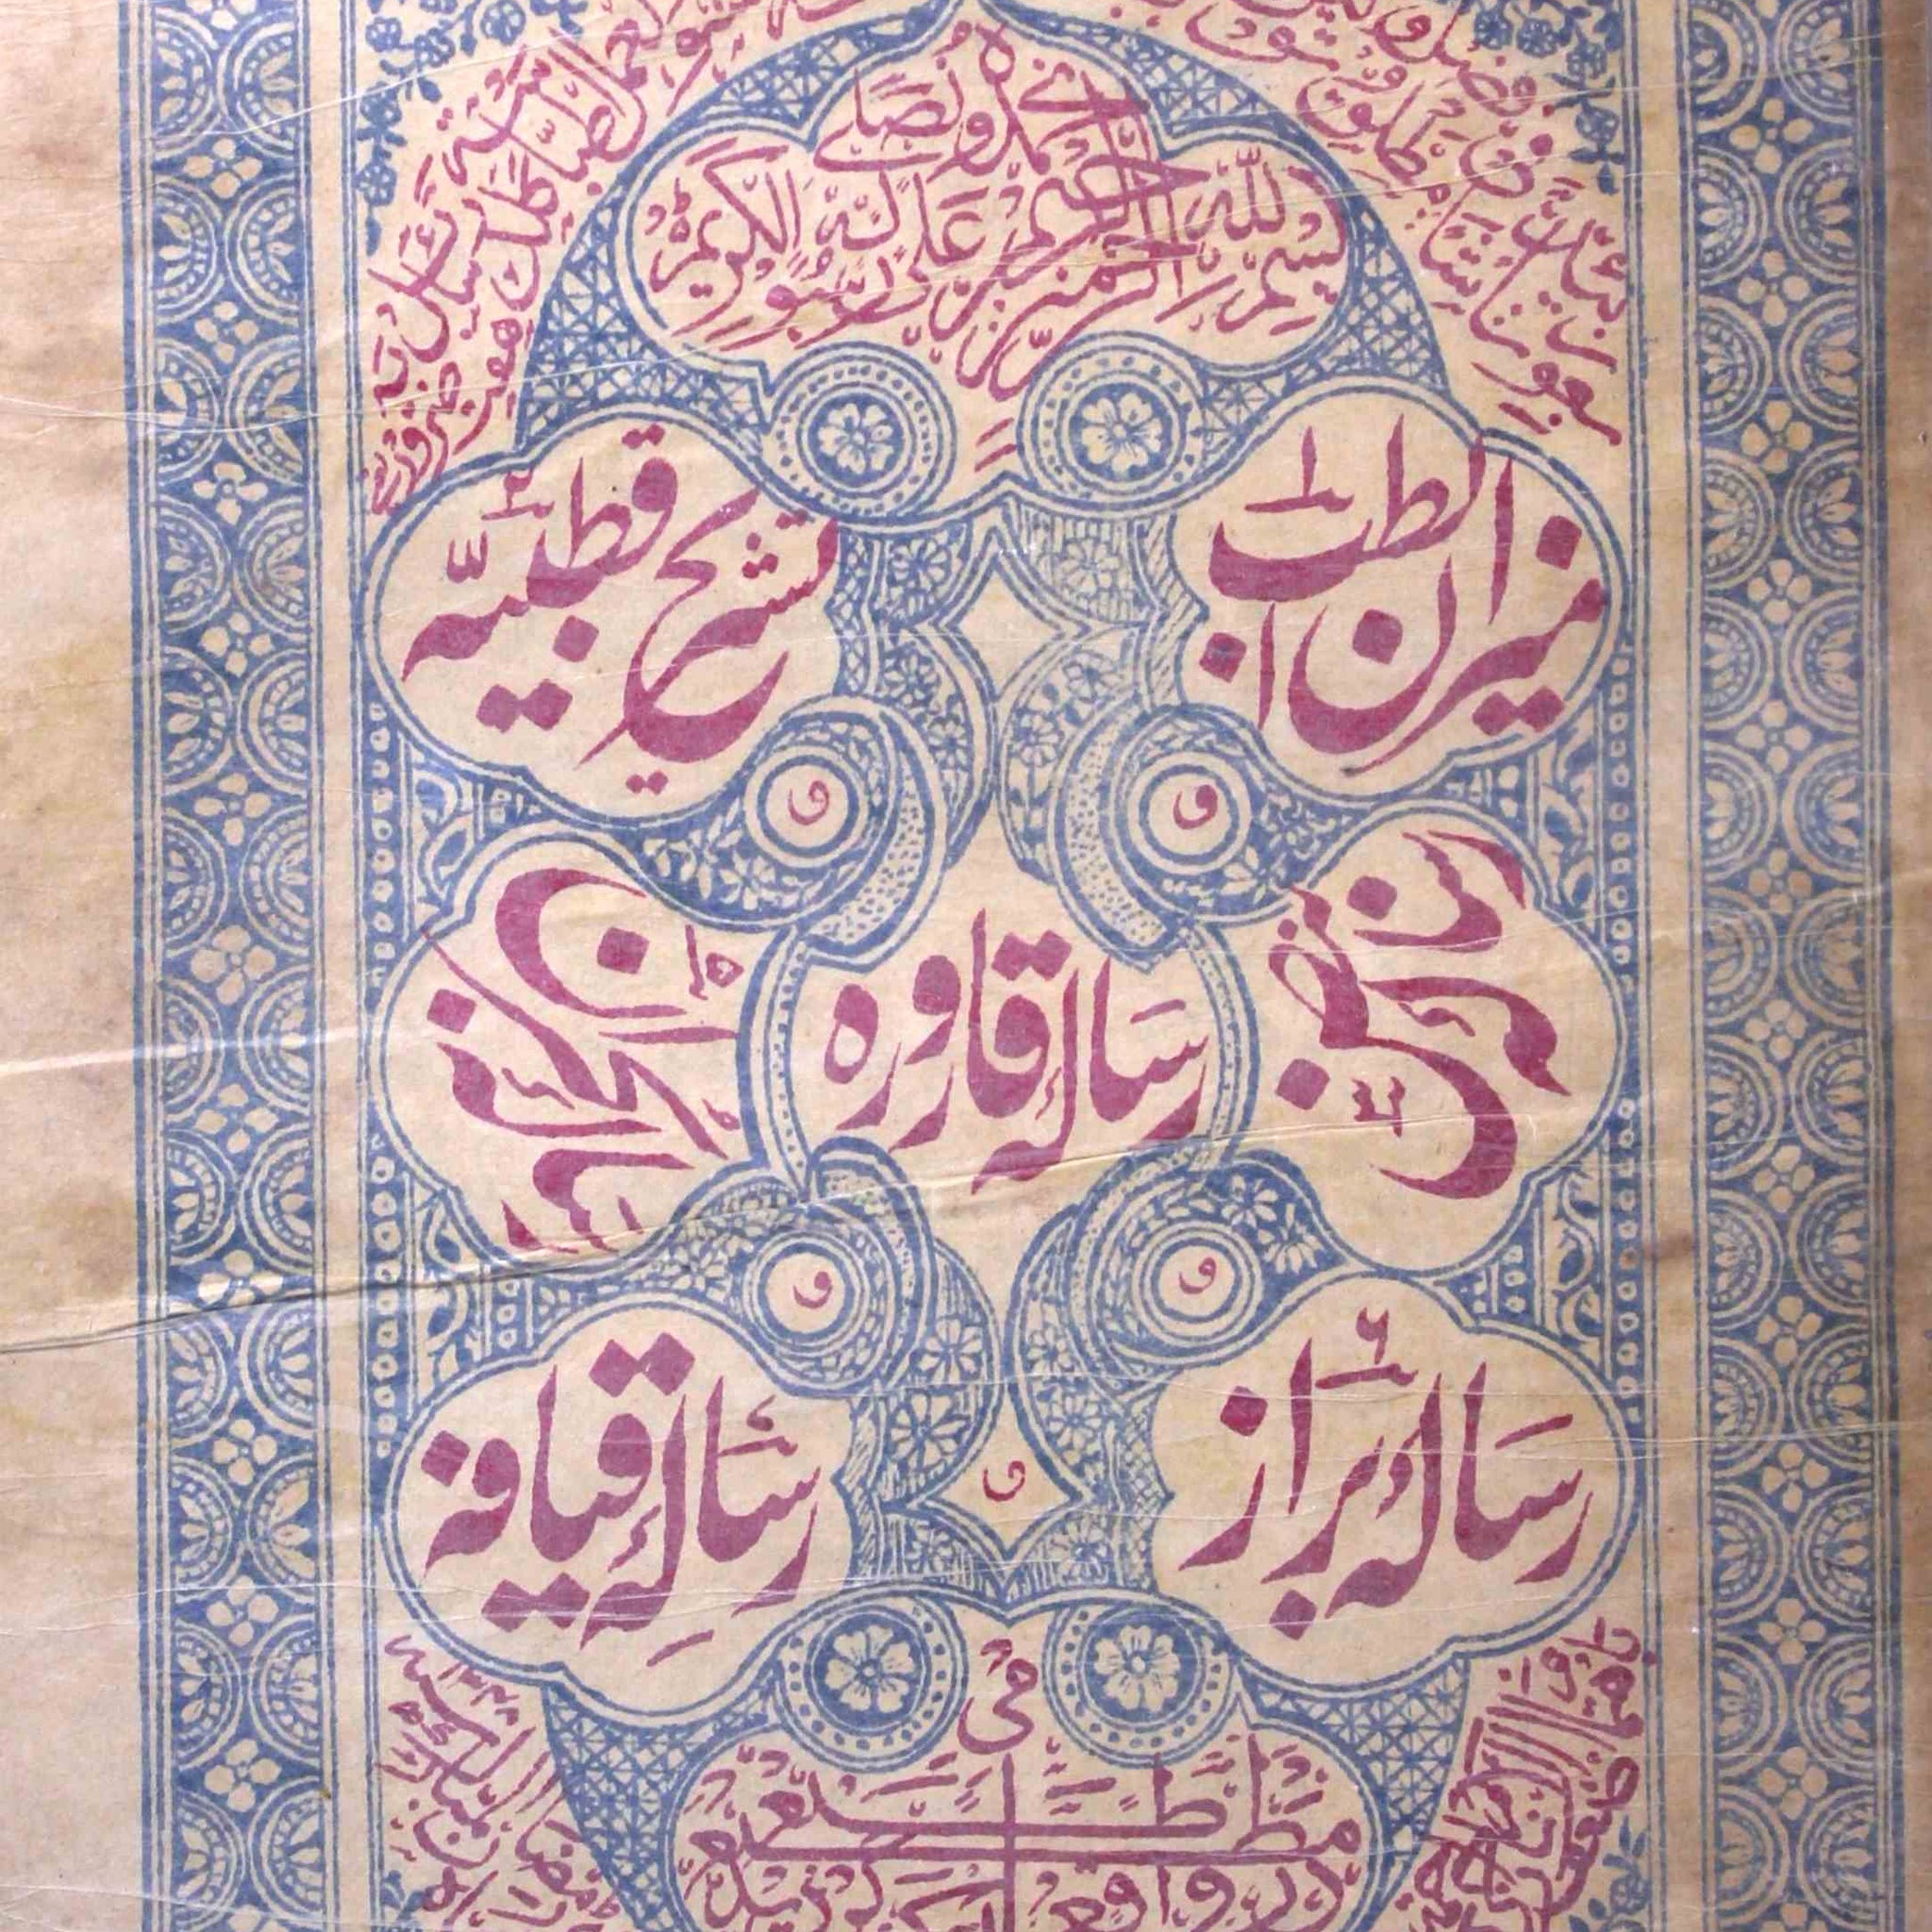 Meezan-ul-Tib Urdu